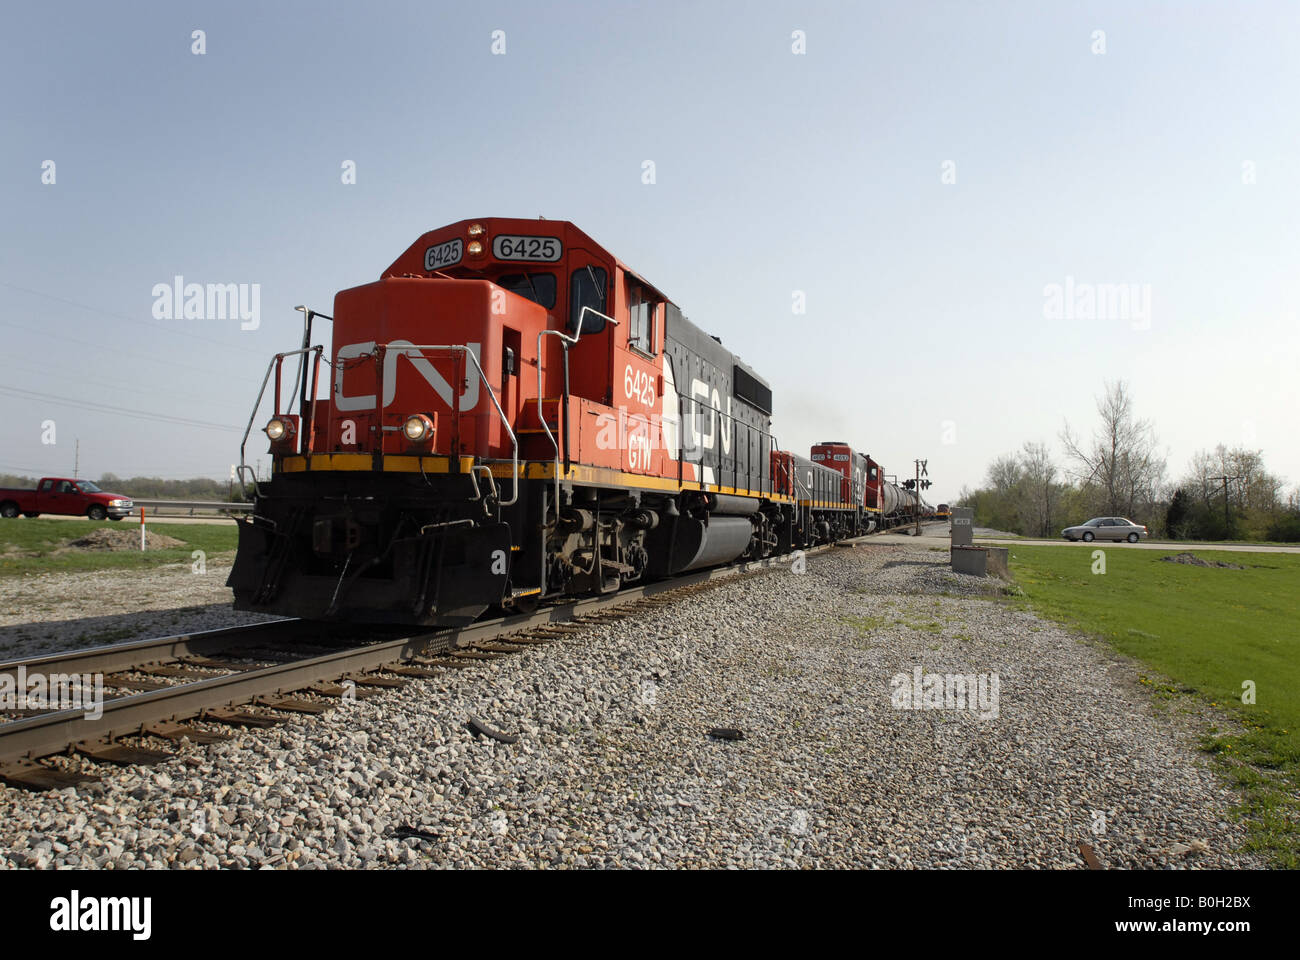 Un train de marchandises du Canadien National traverse un chemin rural dans le midwest des États-Unis près de Chicago Banque D'Images